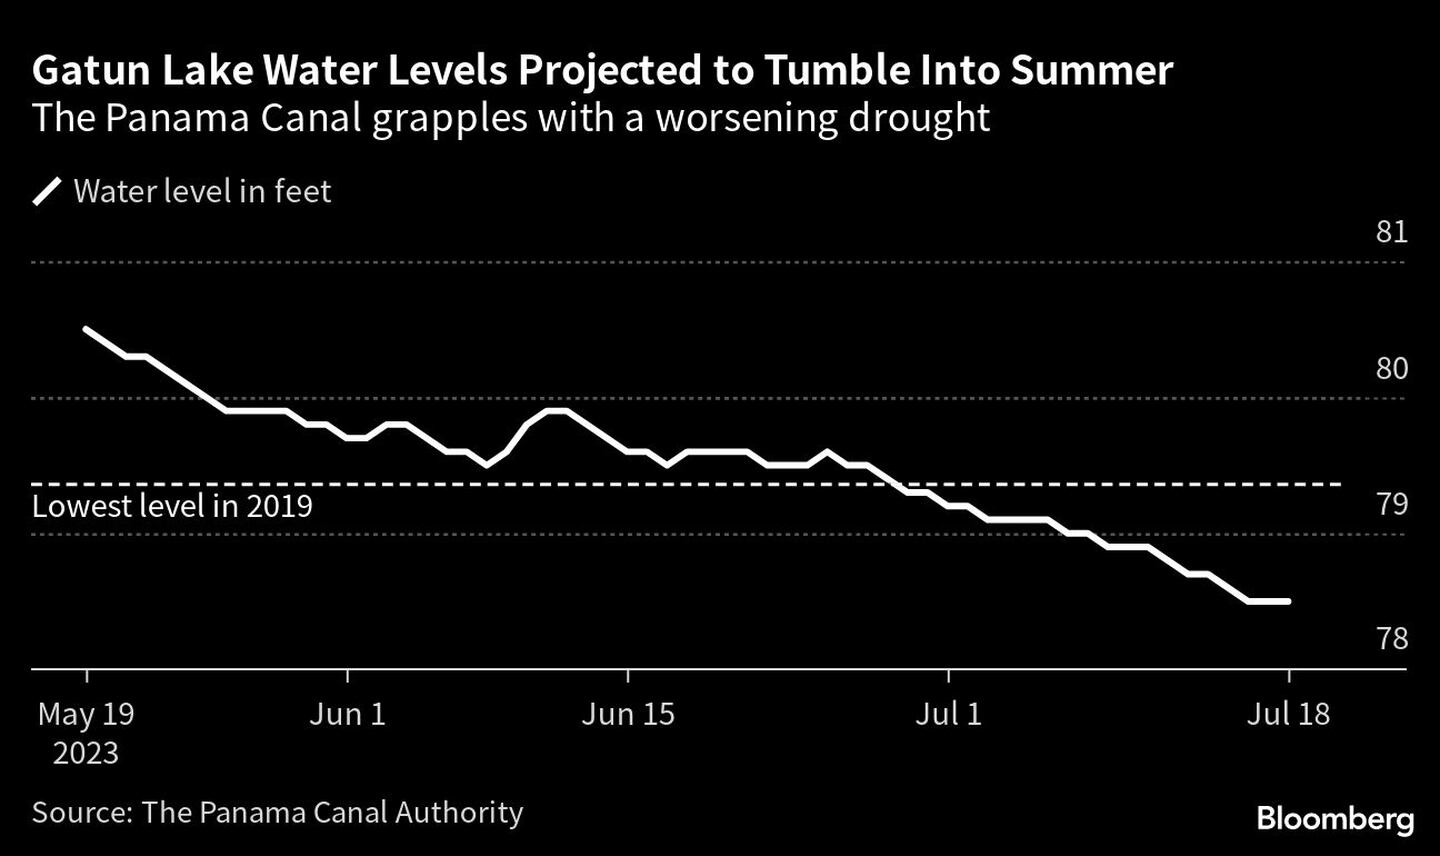  El Canal de Panamá se enfrenta a una sequía cada vez más gravedfd